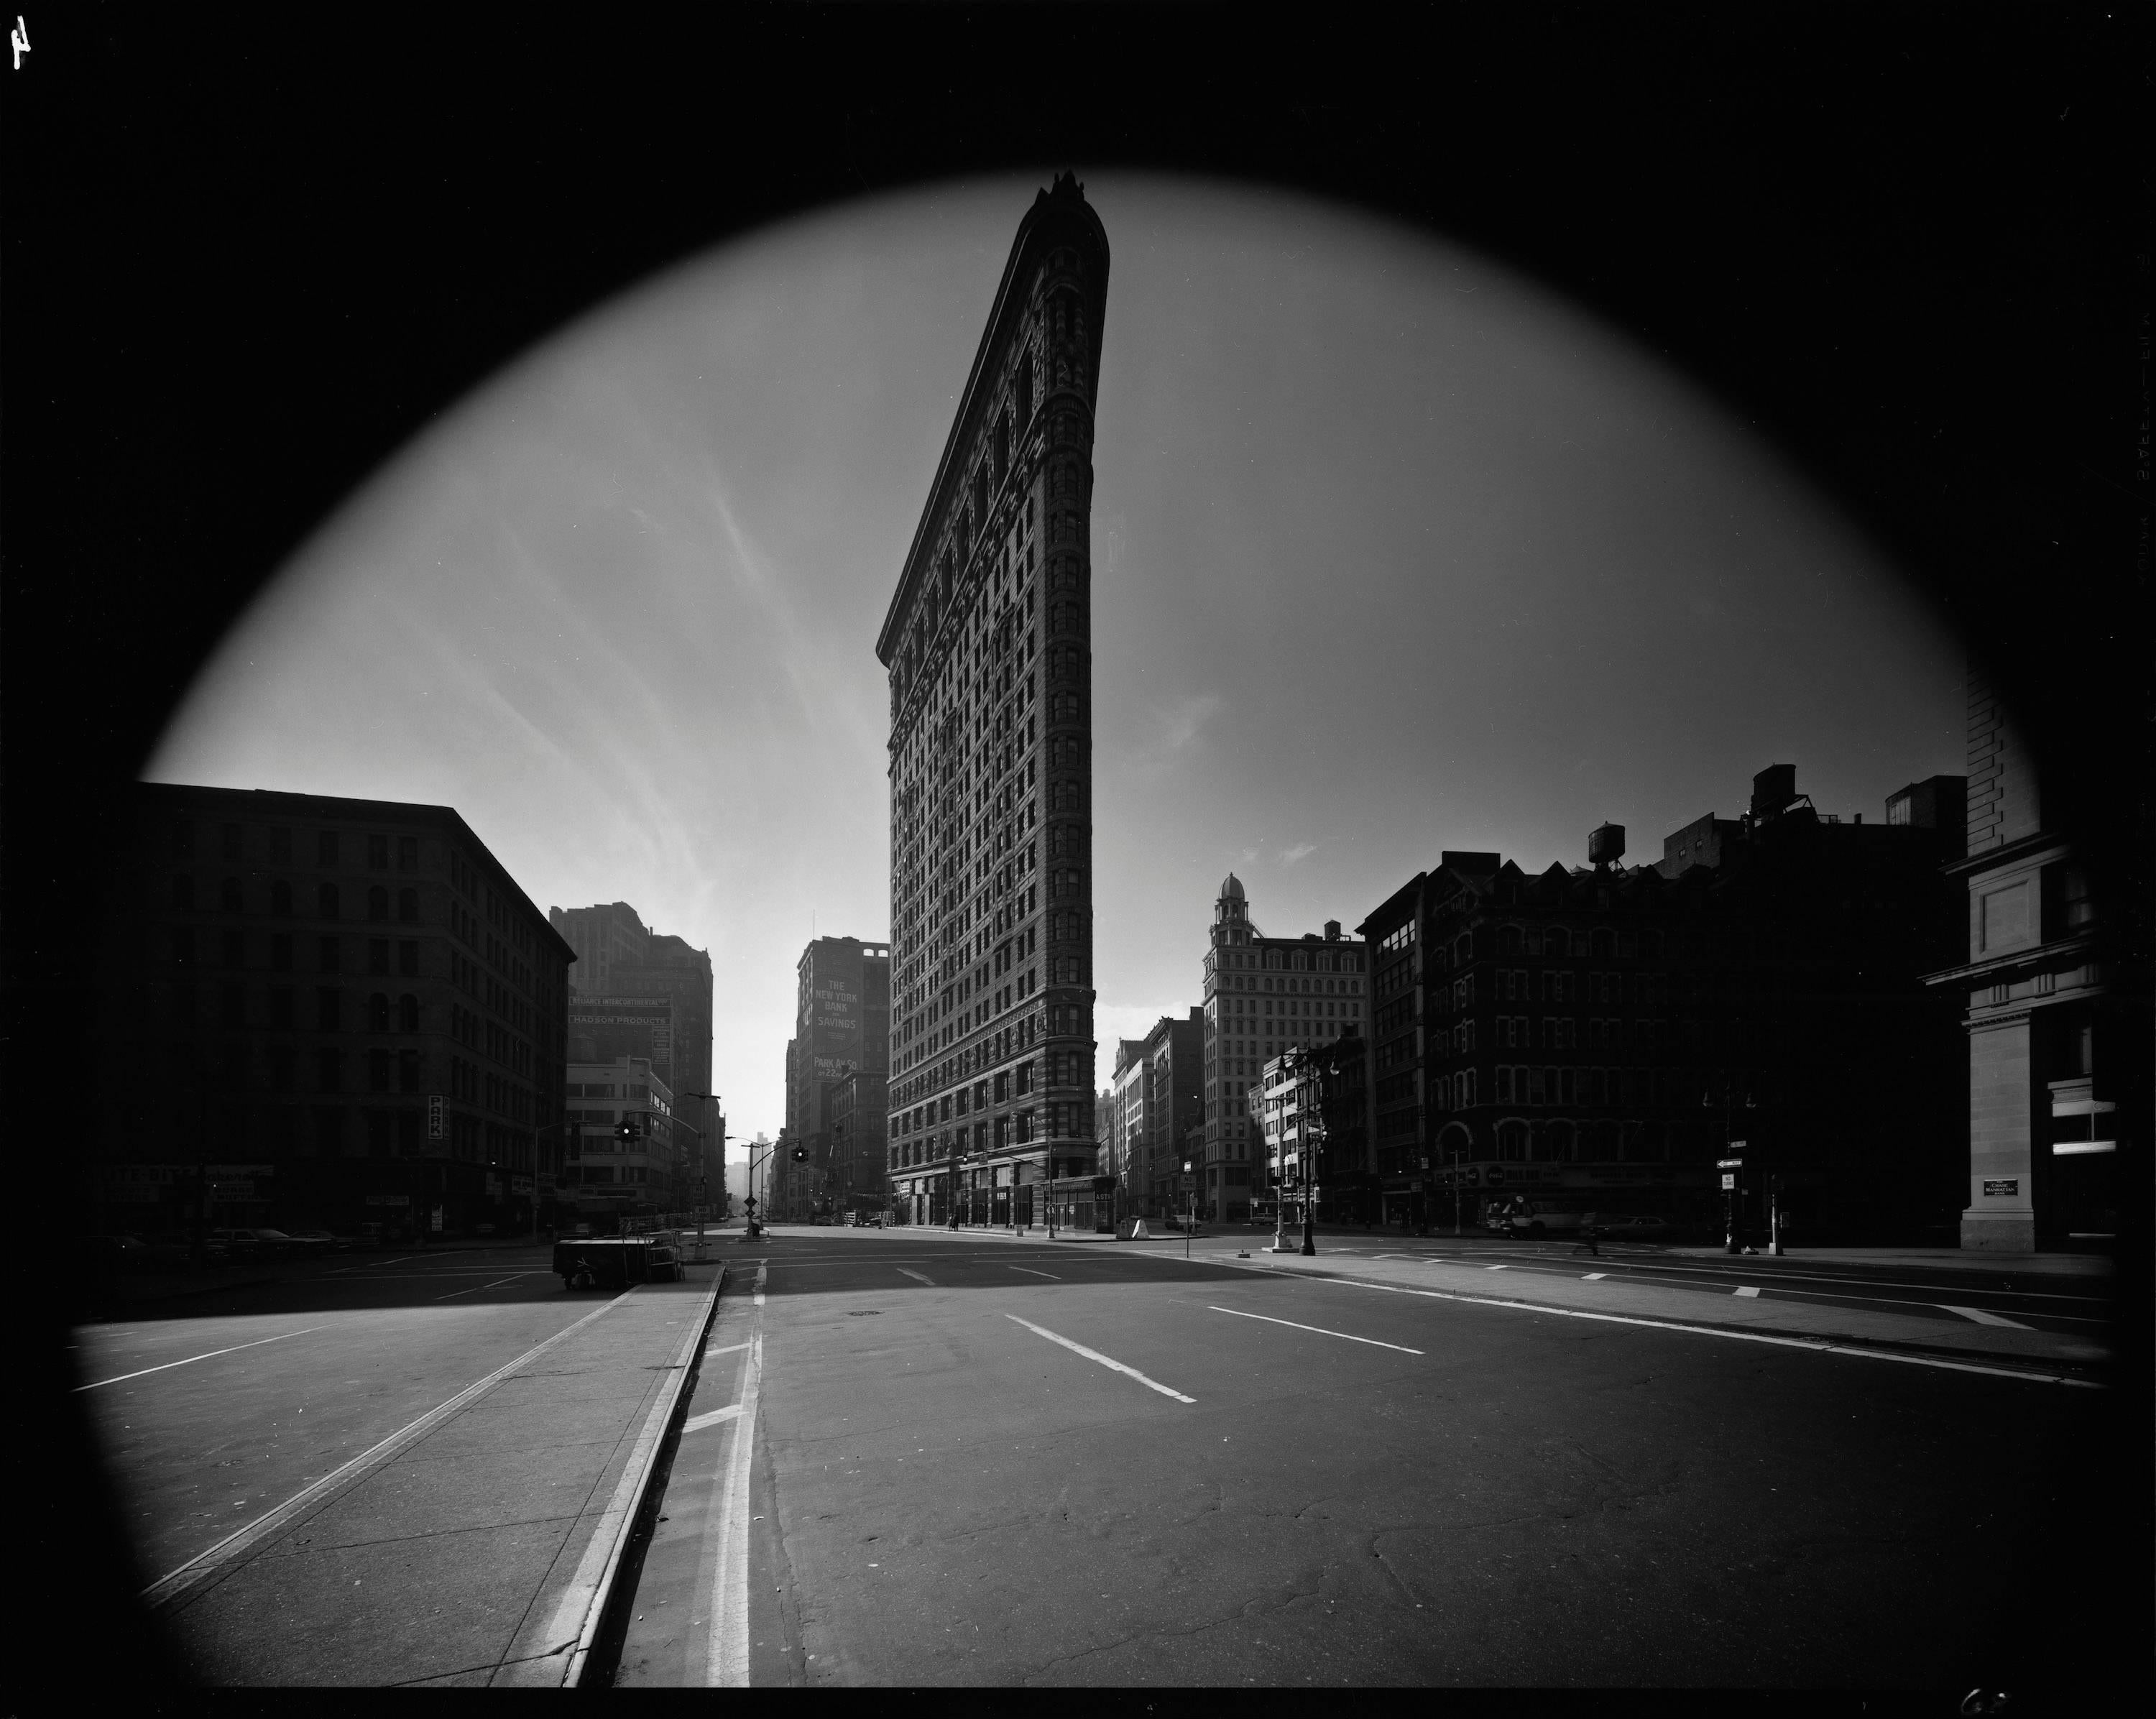 Flatiron Building, New York City, USA, 1969 - Elliott Erwitt (Schwarz-Weiß)
Signiert, betitelt und datiert auf dem beiliegenden Etikett des Künstlers
Silbergelatineabzug, später gedruckt

Erhältlich in vier Größen:
11 x 14 Zoll
16 x 20 Zoll
20 x 24